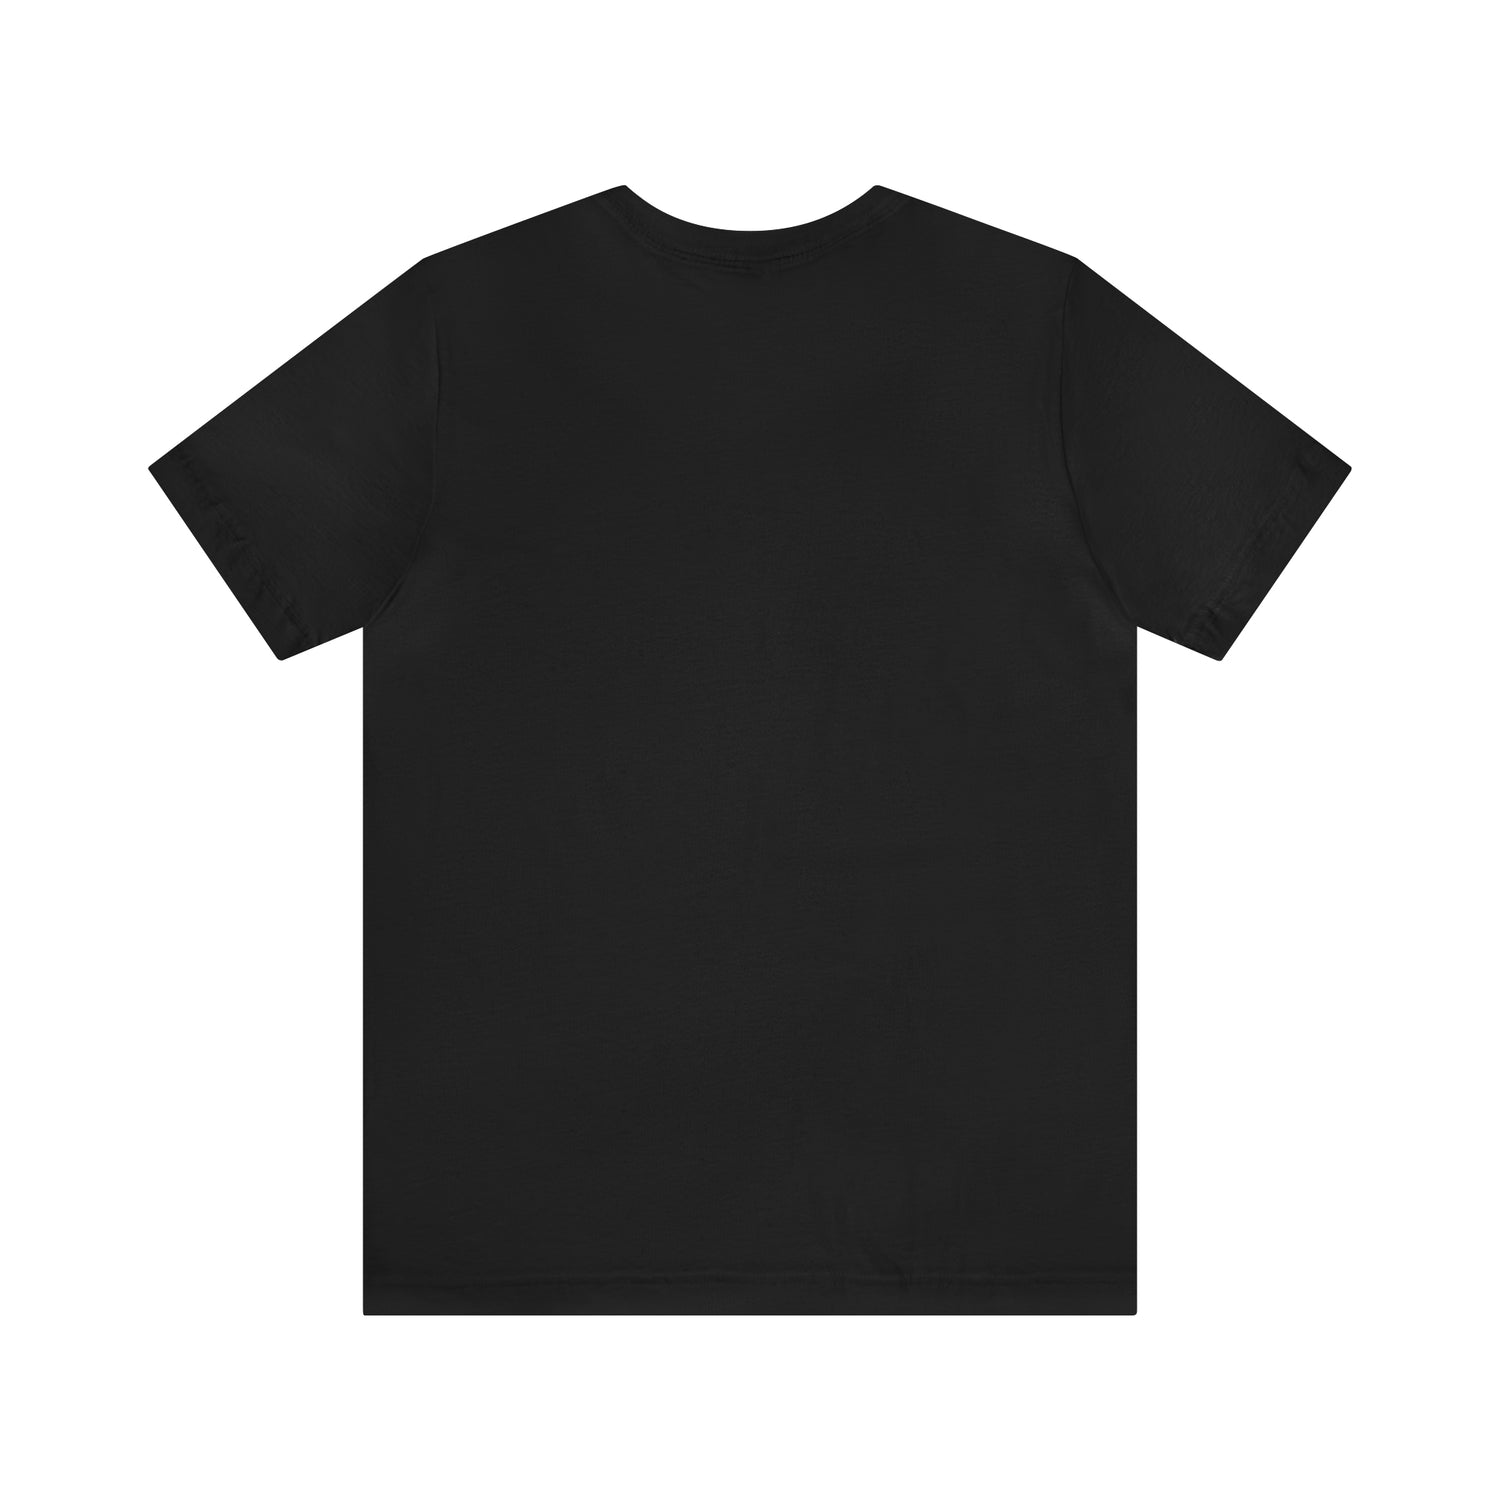 Alumni T-Shirt | School Student Tee T-Shirt Petrova Designs